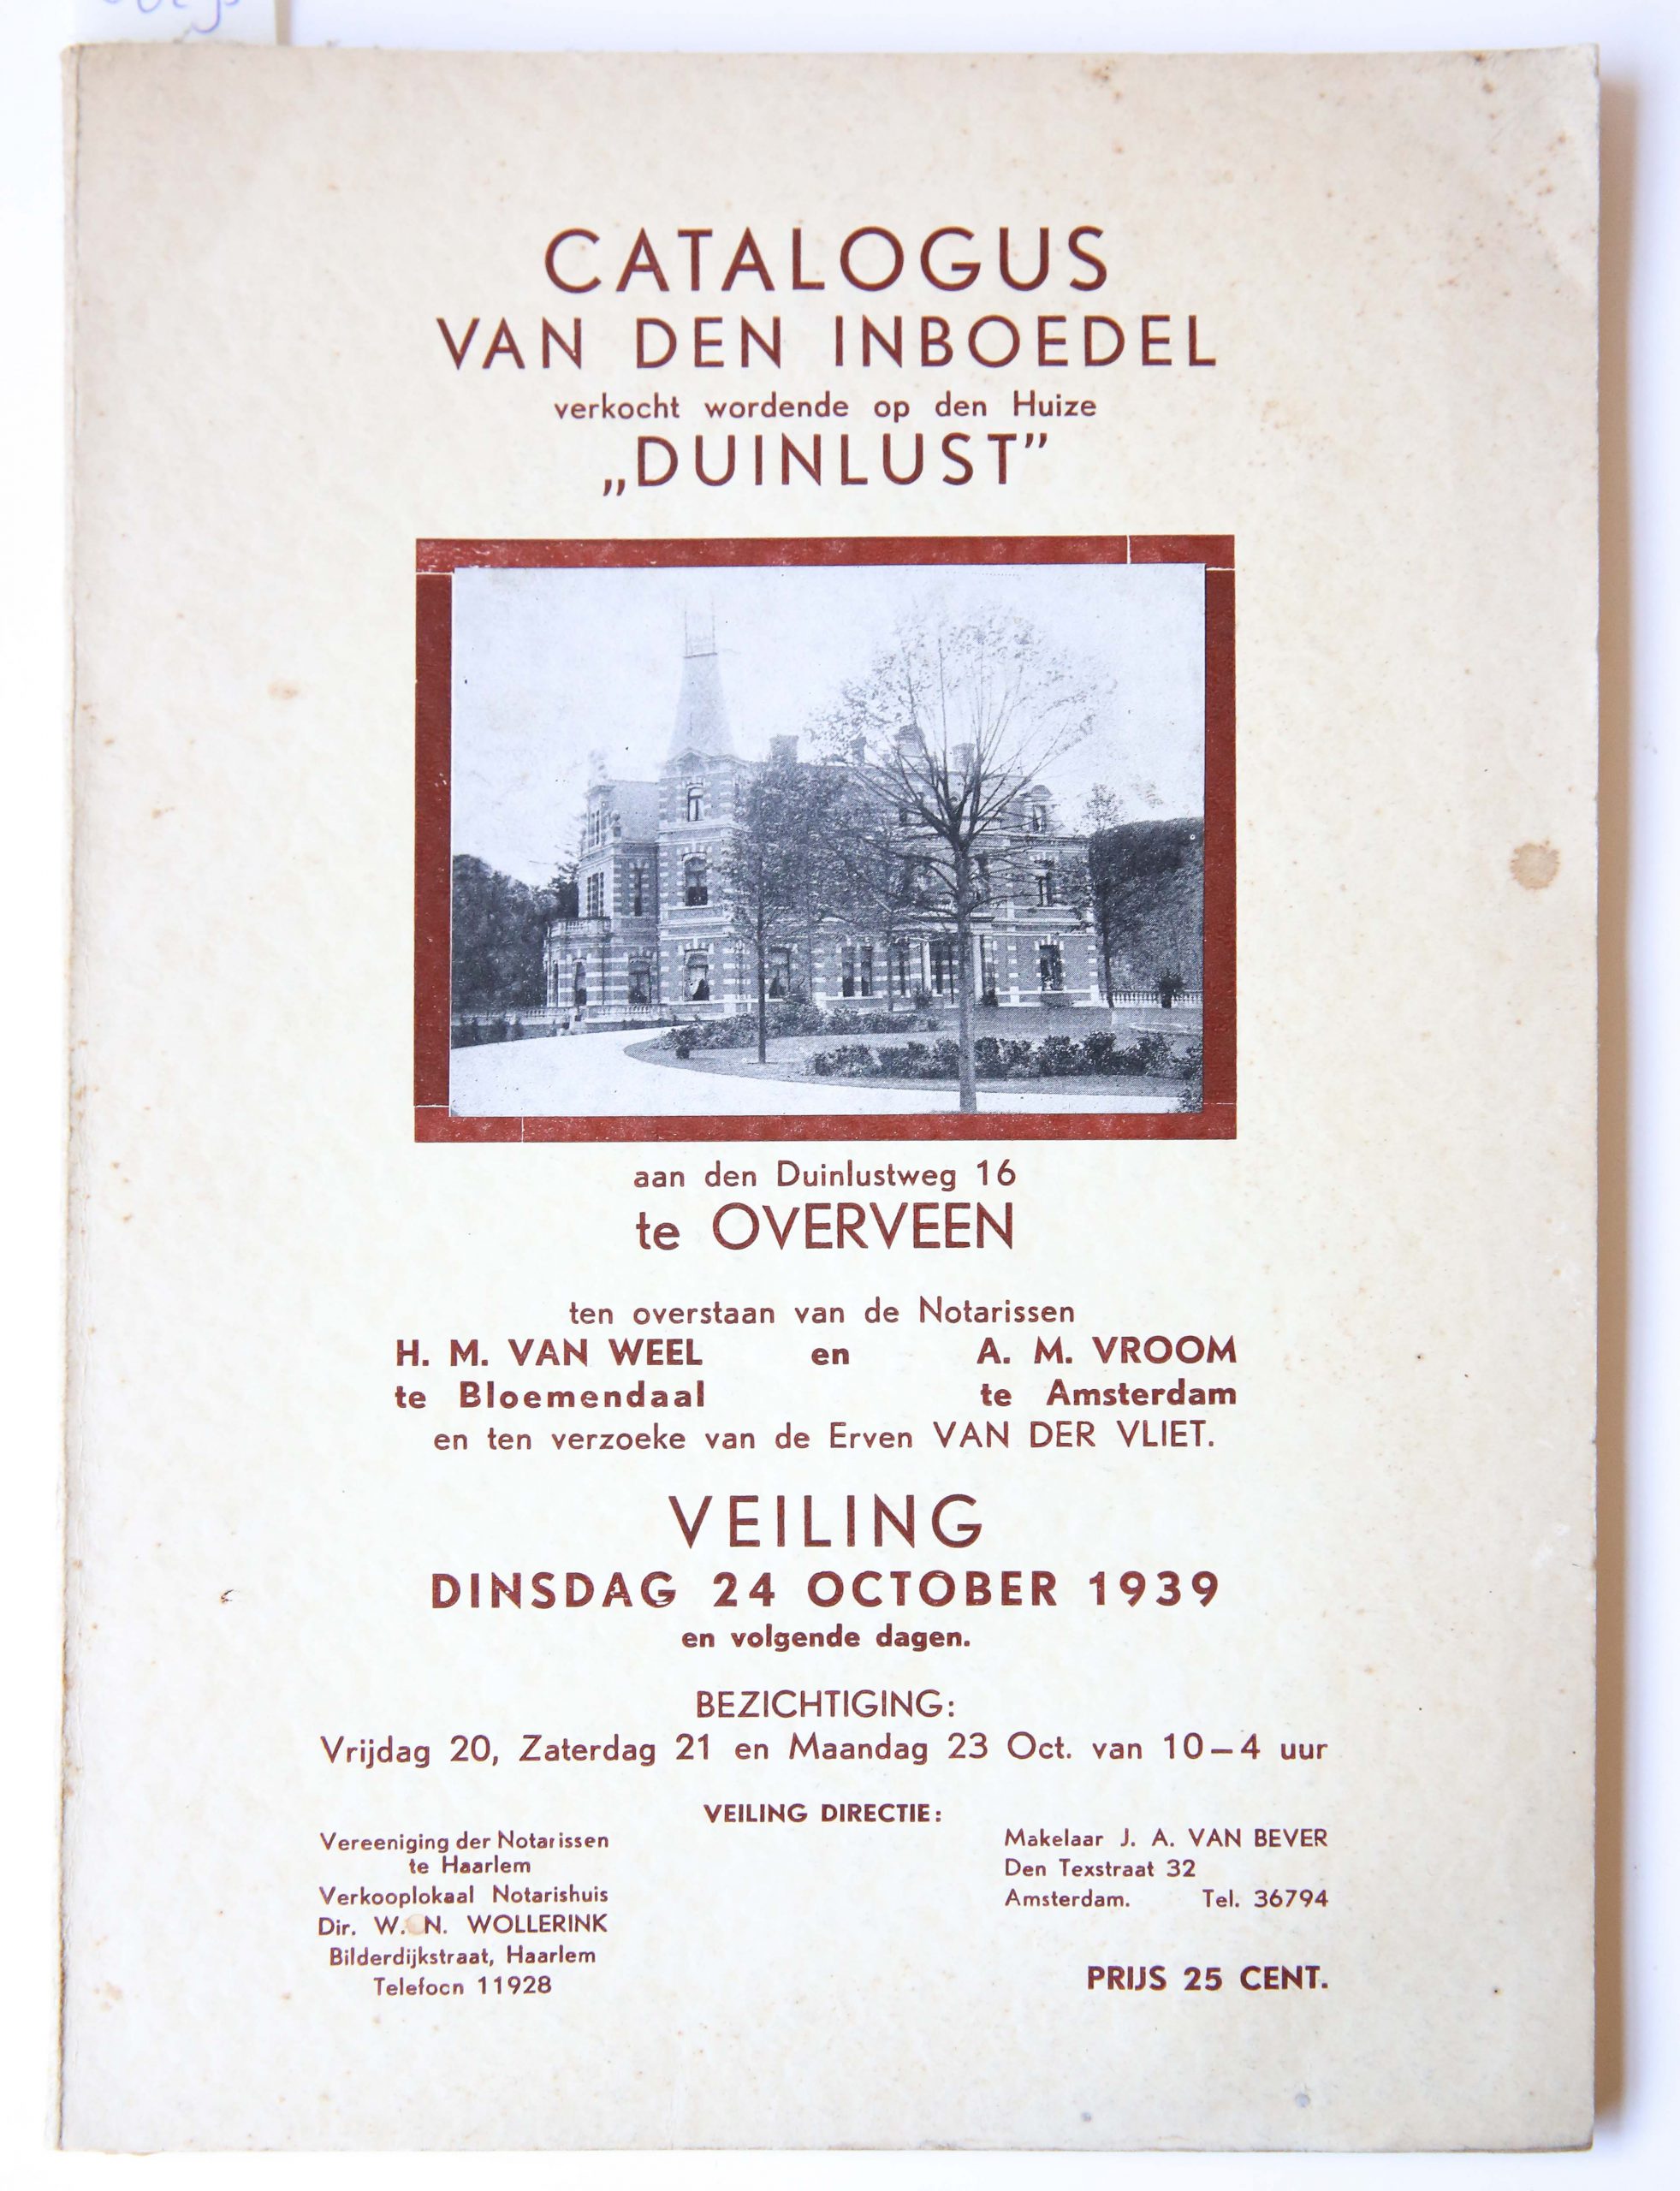 Catalogus van den inboedel verkocht wordende op den huize "Duinlust"aan den Duinlustweg 16 te Overveen ten overstaan van de notarissen H.M. Van Weel en A.M. Vroom, Veiling 24 october 1939, 64 pp.